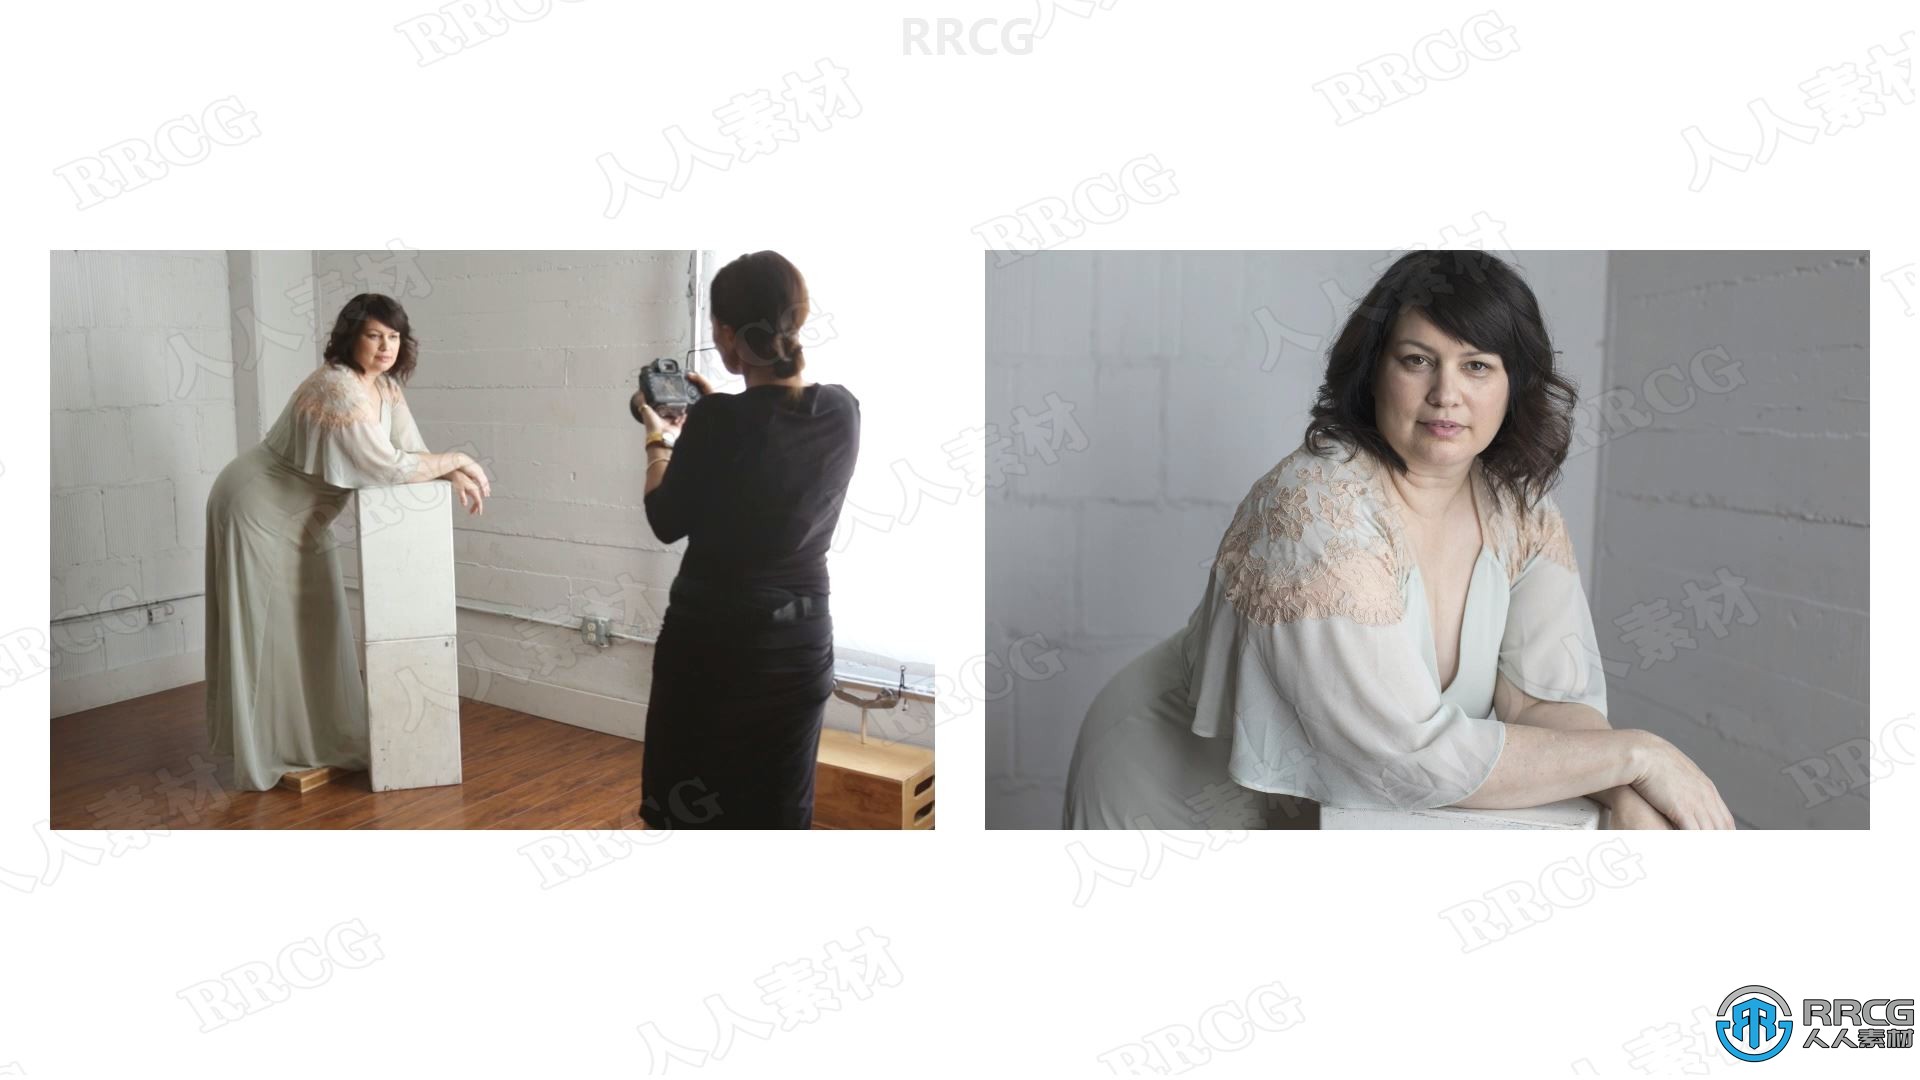 杂志效果女性俯卧姿势拍摄技巧工作流程视频教程